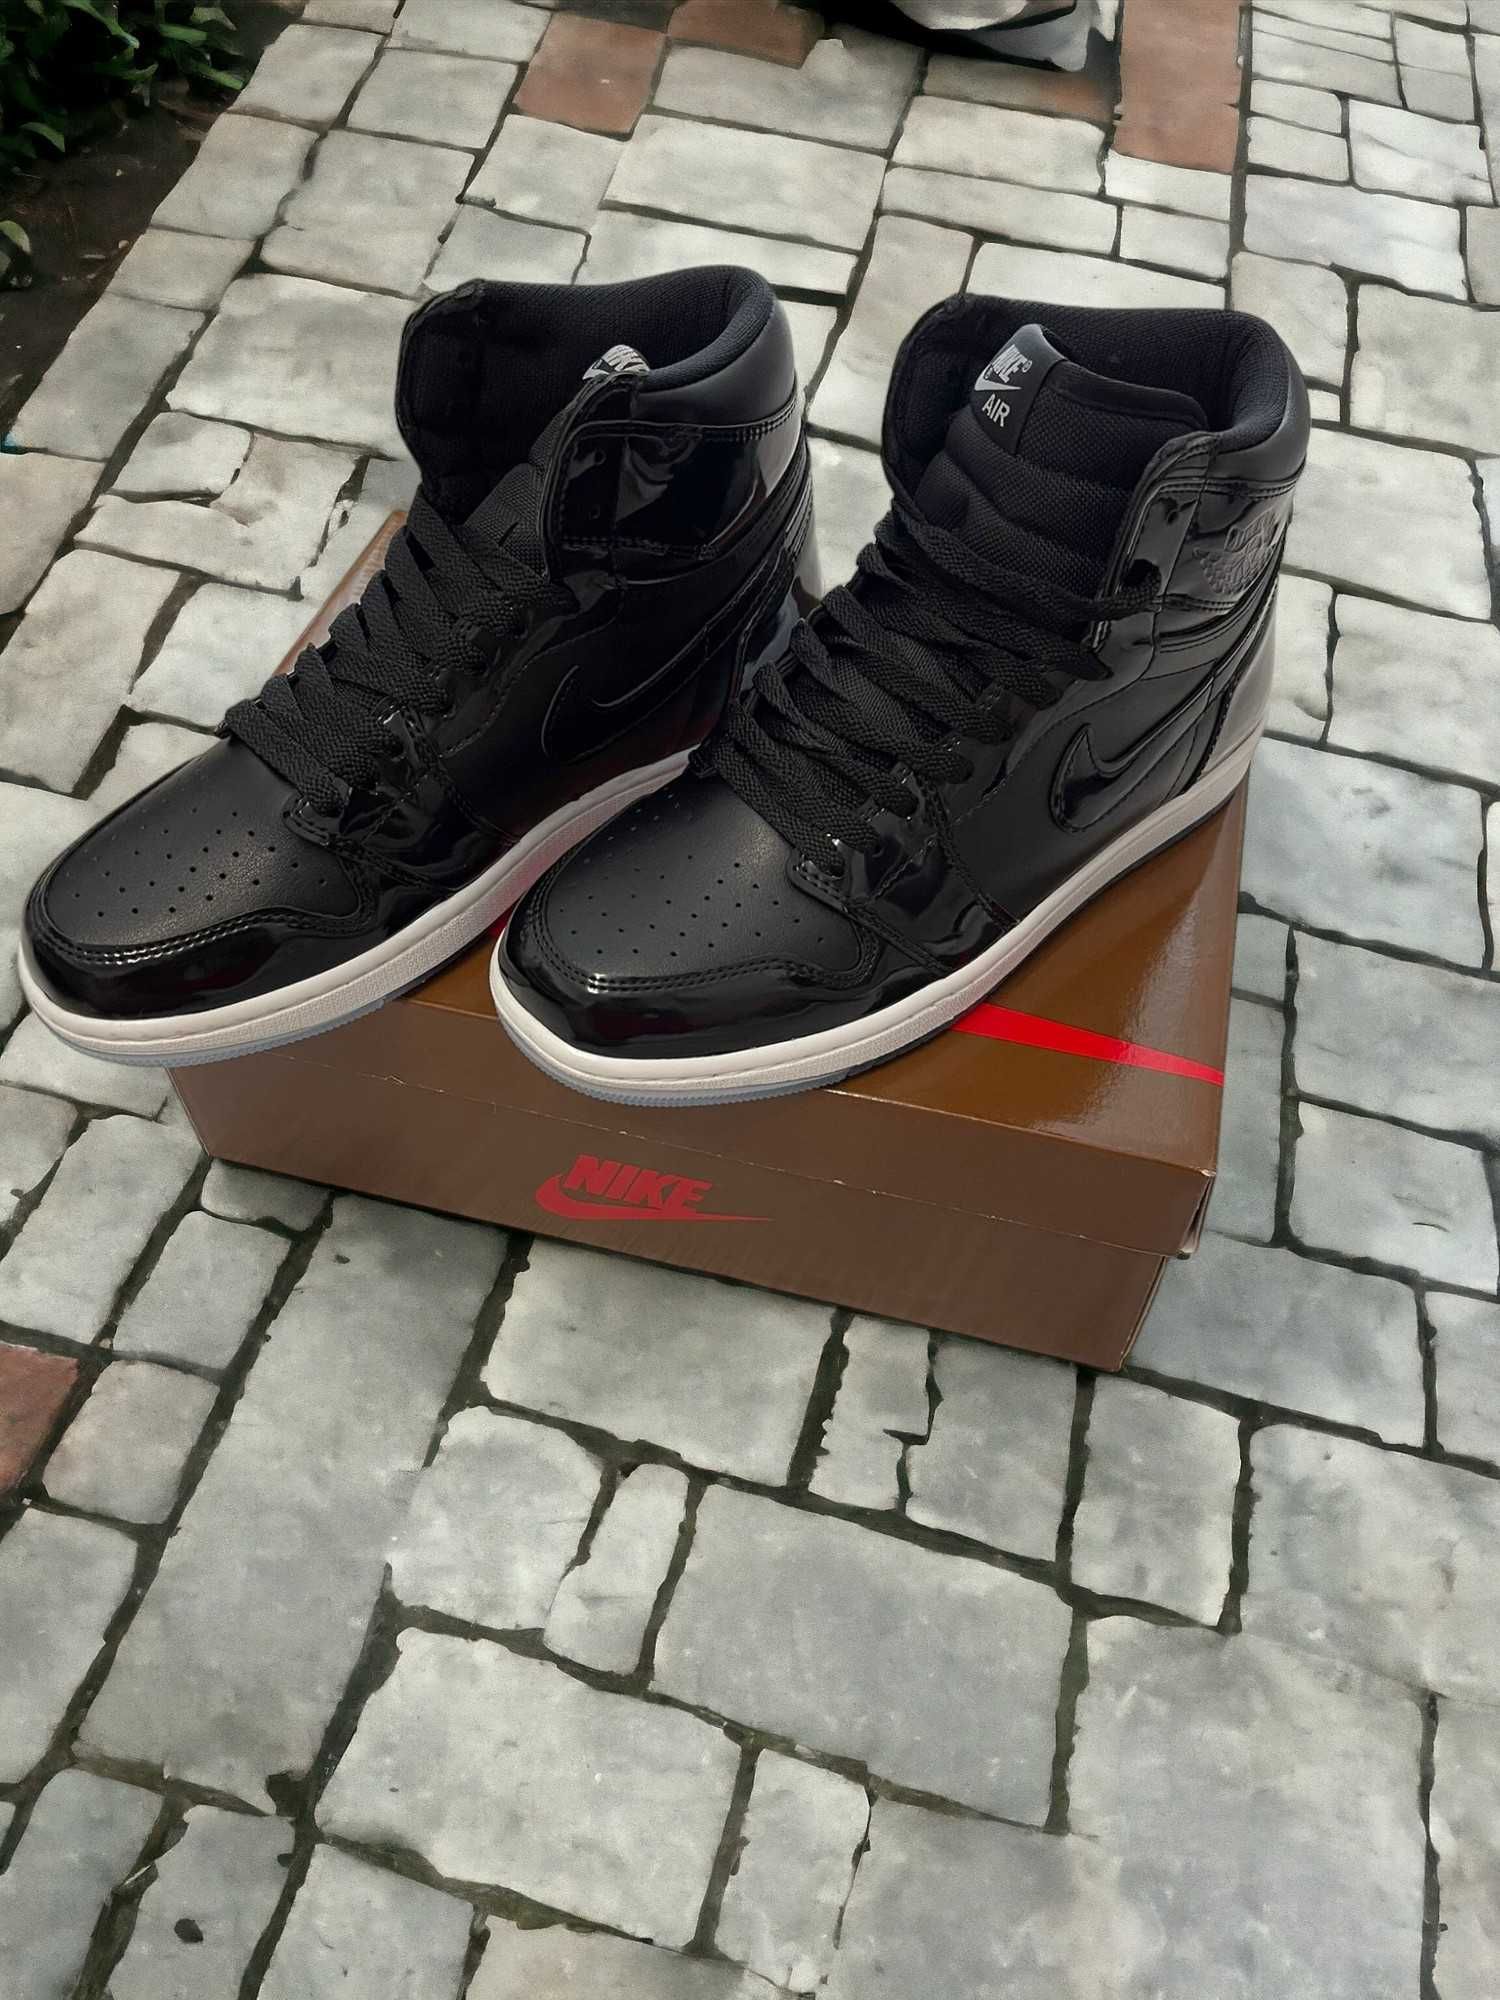 Nike Air Jordan 1 High "Space Jam" / Adidasi Premium Quality